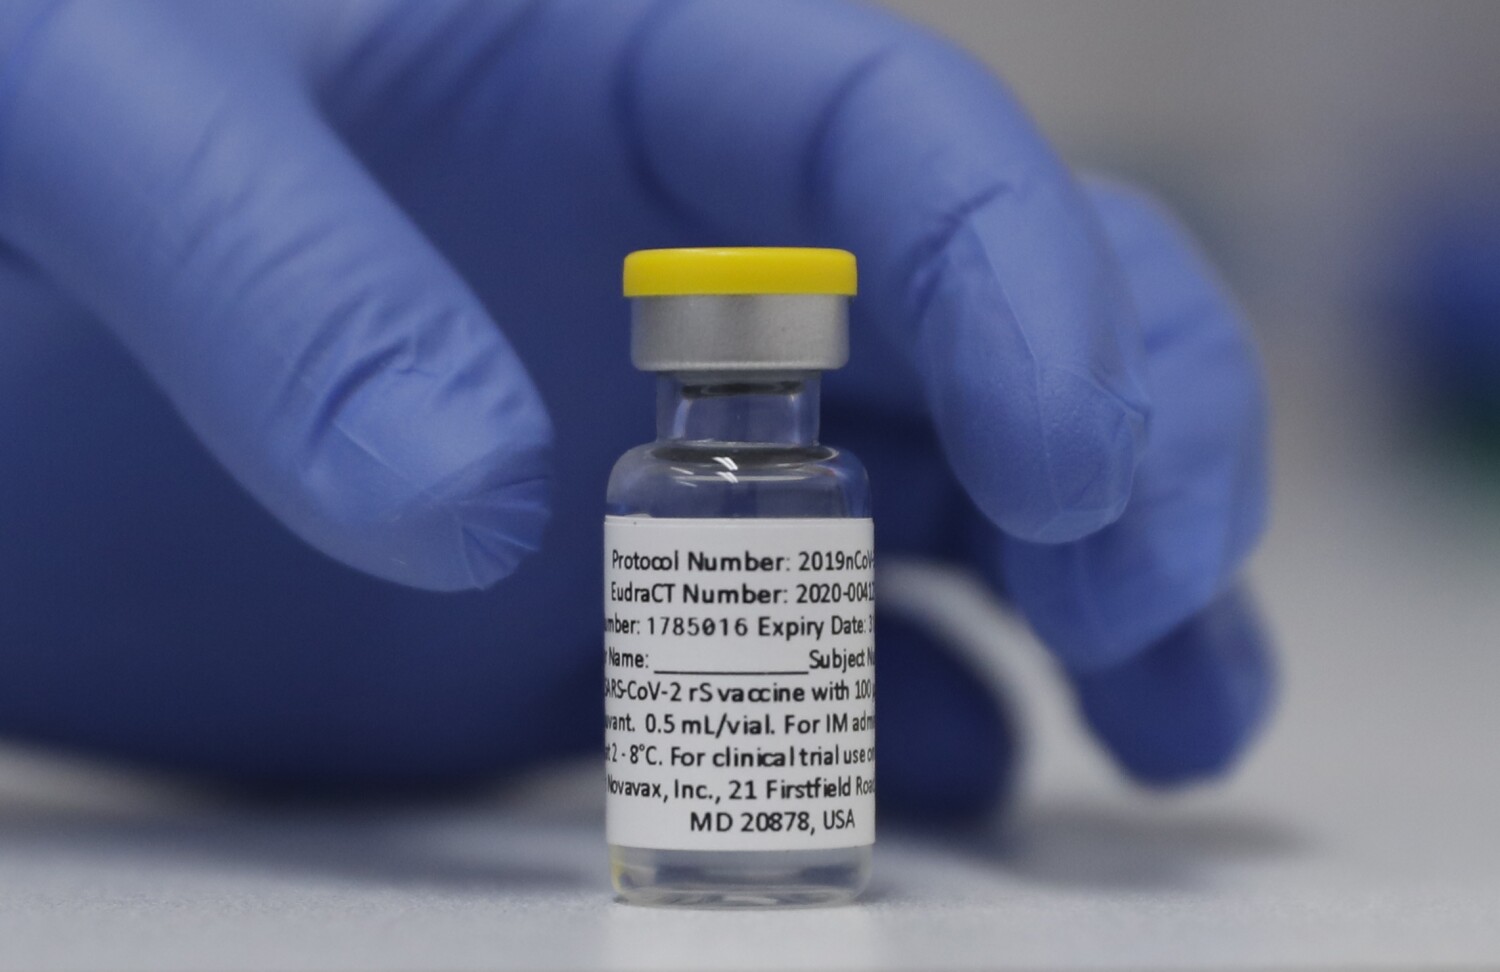 Eski okul teknolojisiyle Novavax, COVID aşı şüphecilerini yenebilir mi?